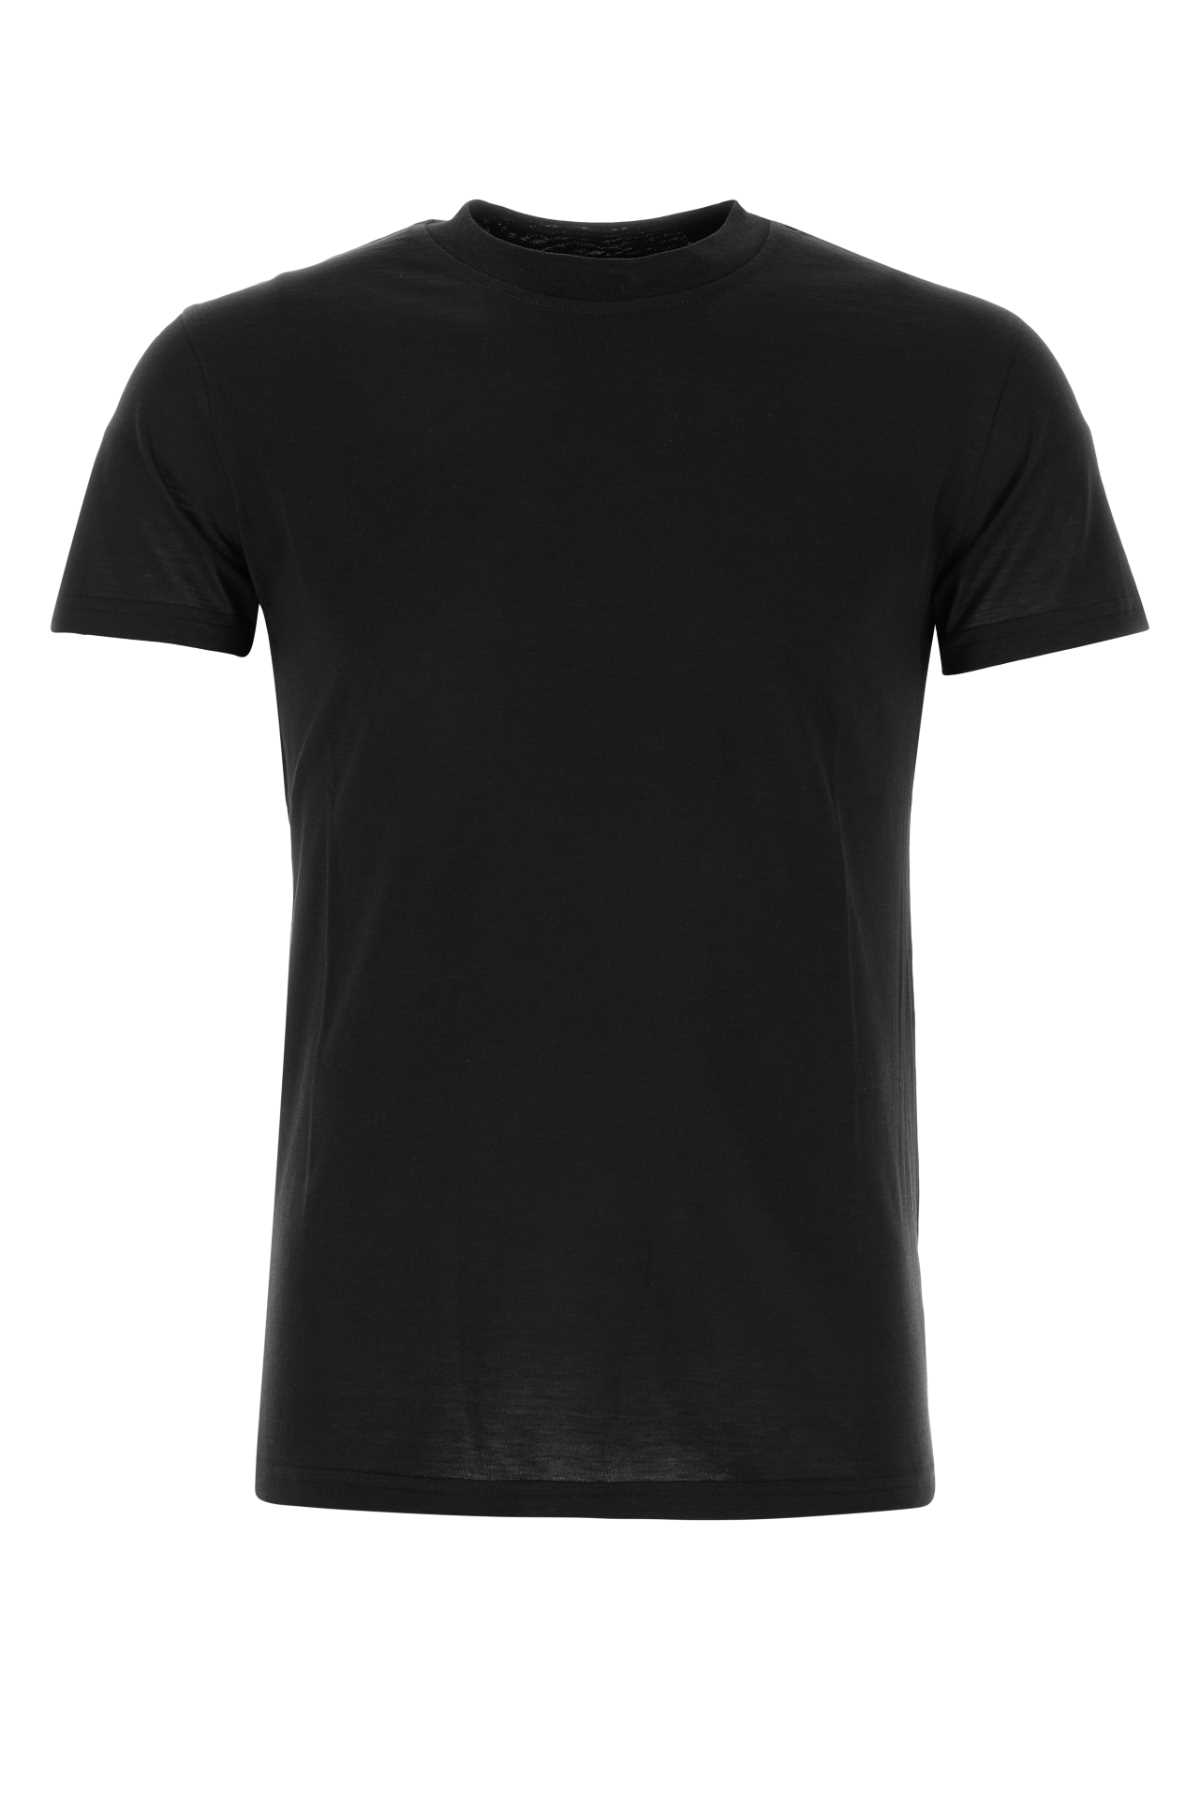 Black Silk Blend T-shirt